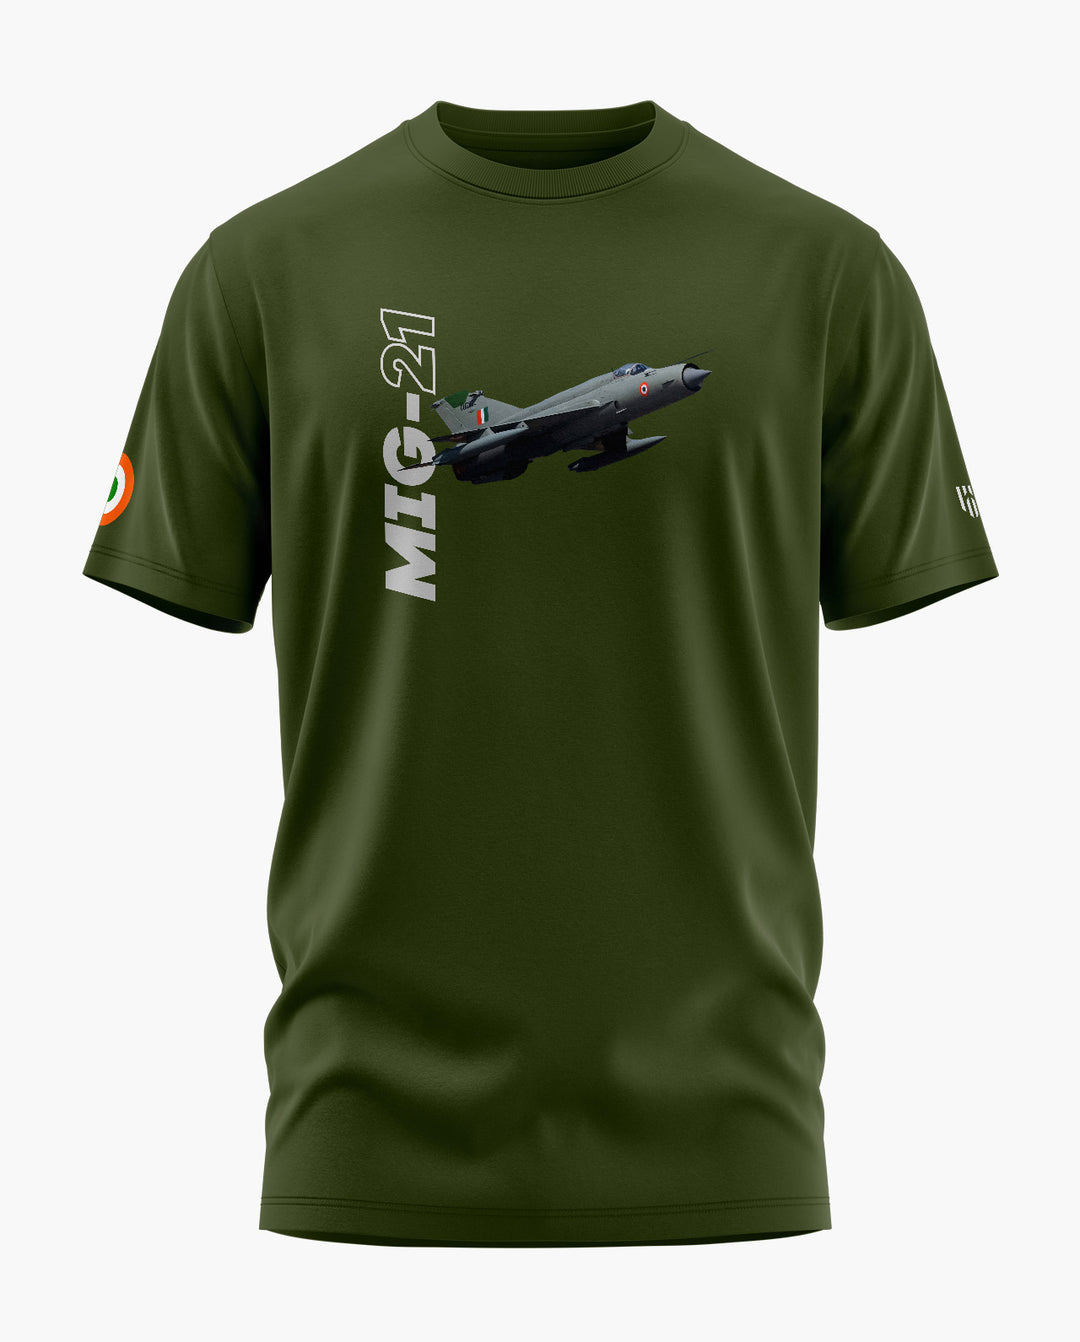 MiG-21 Thunderbird T-Shirt